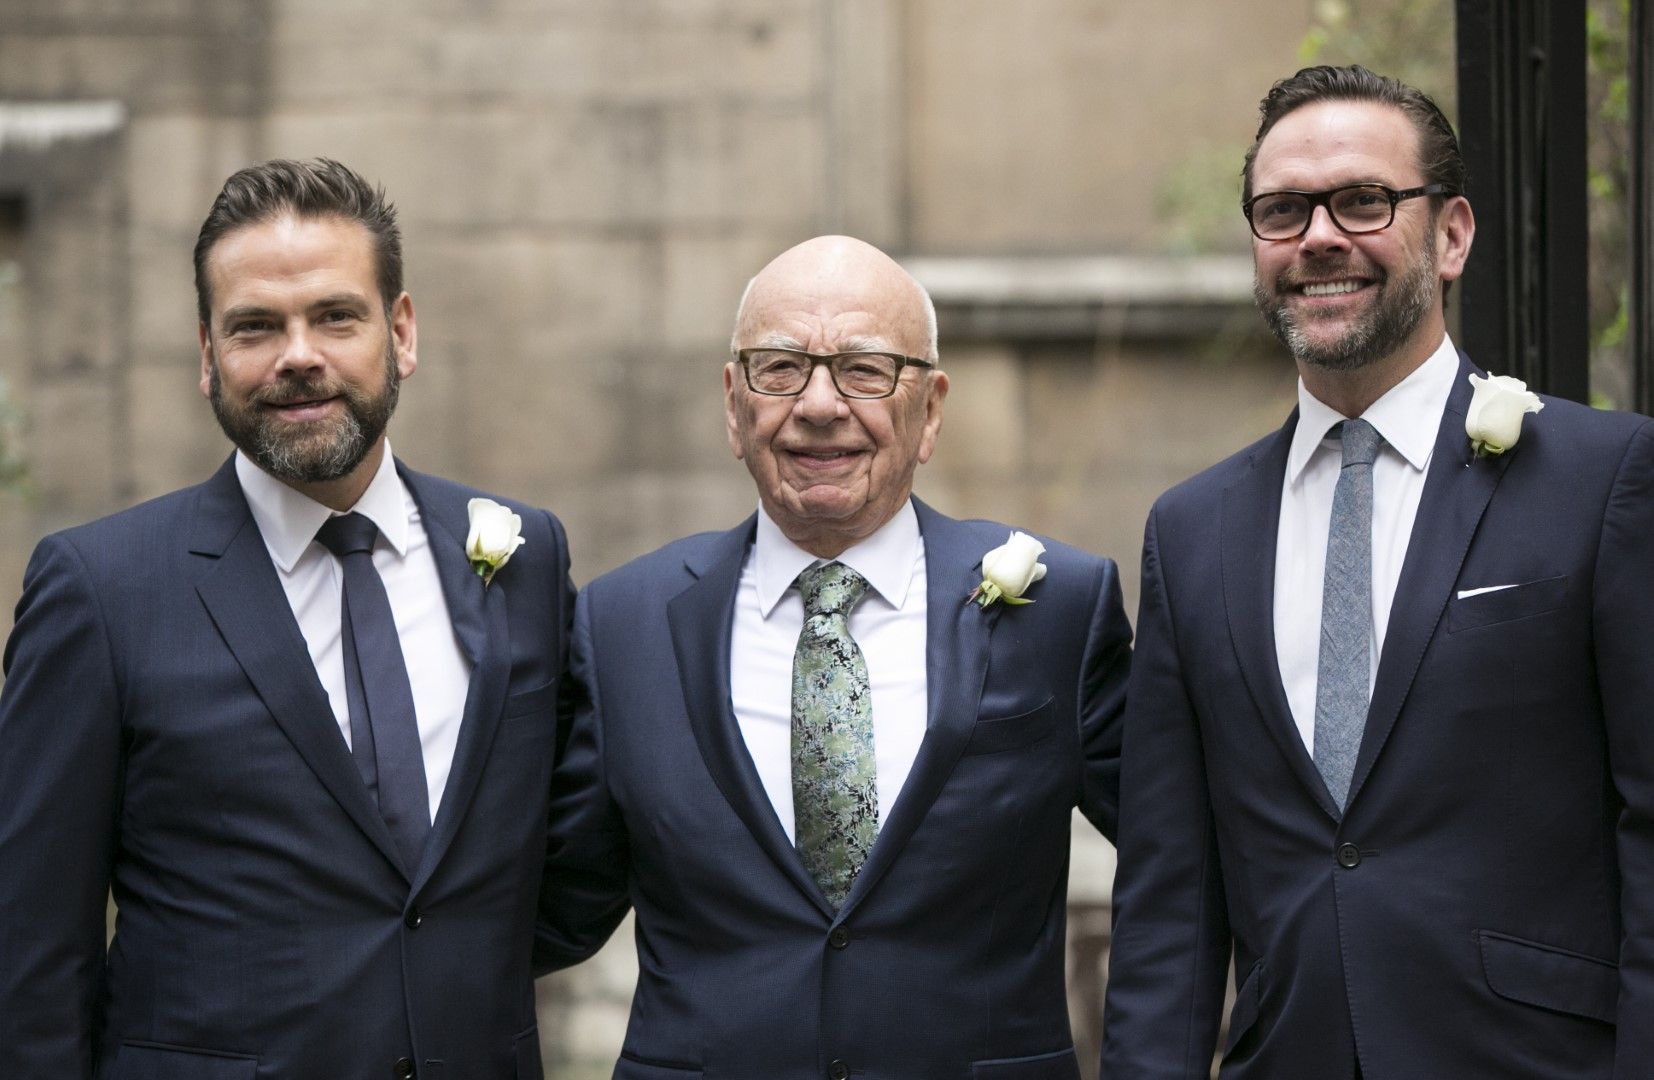 Рупърт Мърдок и двамата му сина - Джеймс (вдясно) и Лаклан (вляво), на 5 март 2016 г., ден след сватбата му в Лондон с Джери Хол. Джеймс се оттегли, Лаклан управлява голяма част от бизнеса